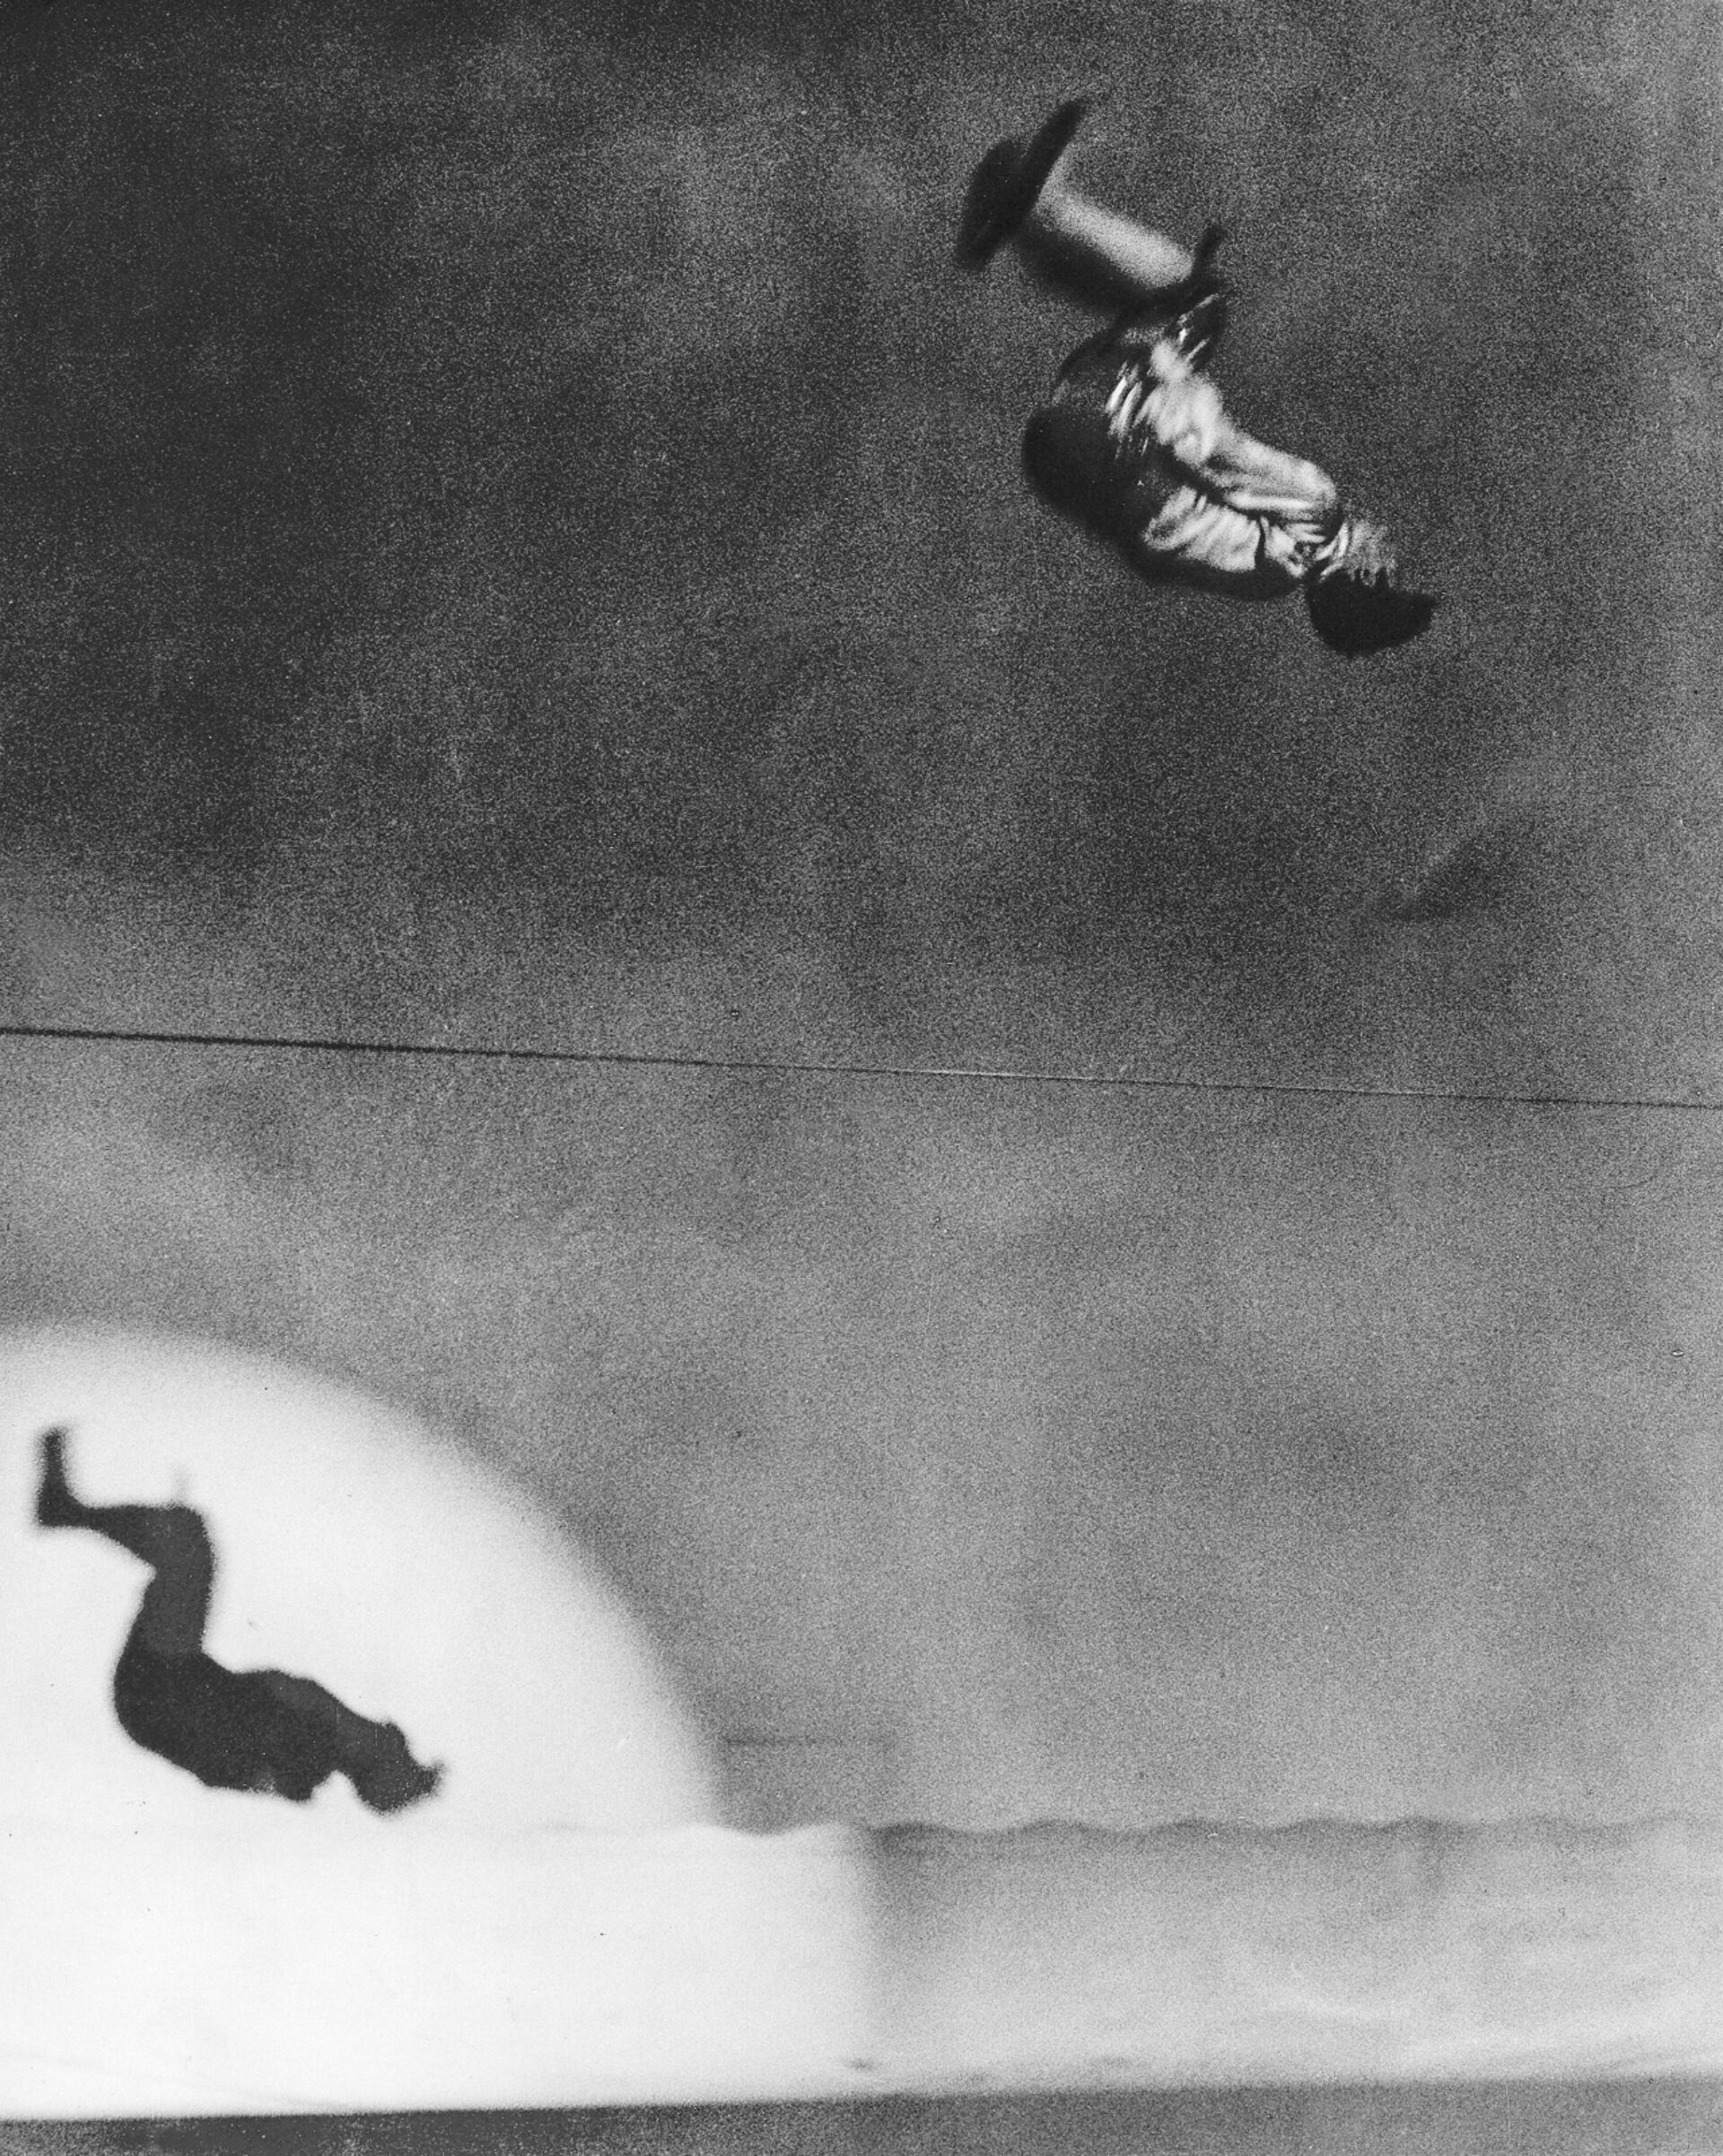 Martin Munkácsi, Der Seiltänzer Colleano macht einen Salto auf dem Seil, 1932, Silbergelatine-Abzug auf Barytpapier, © ullstein bild collection